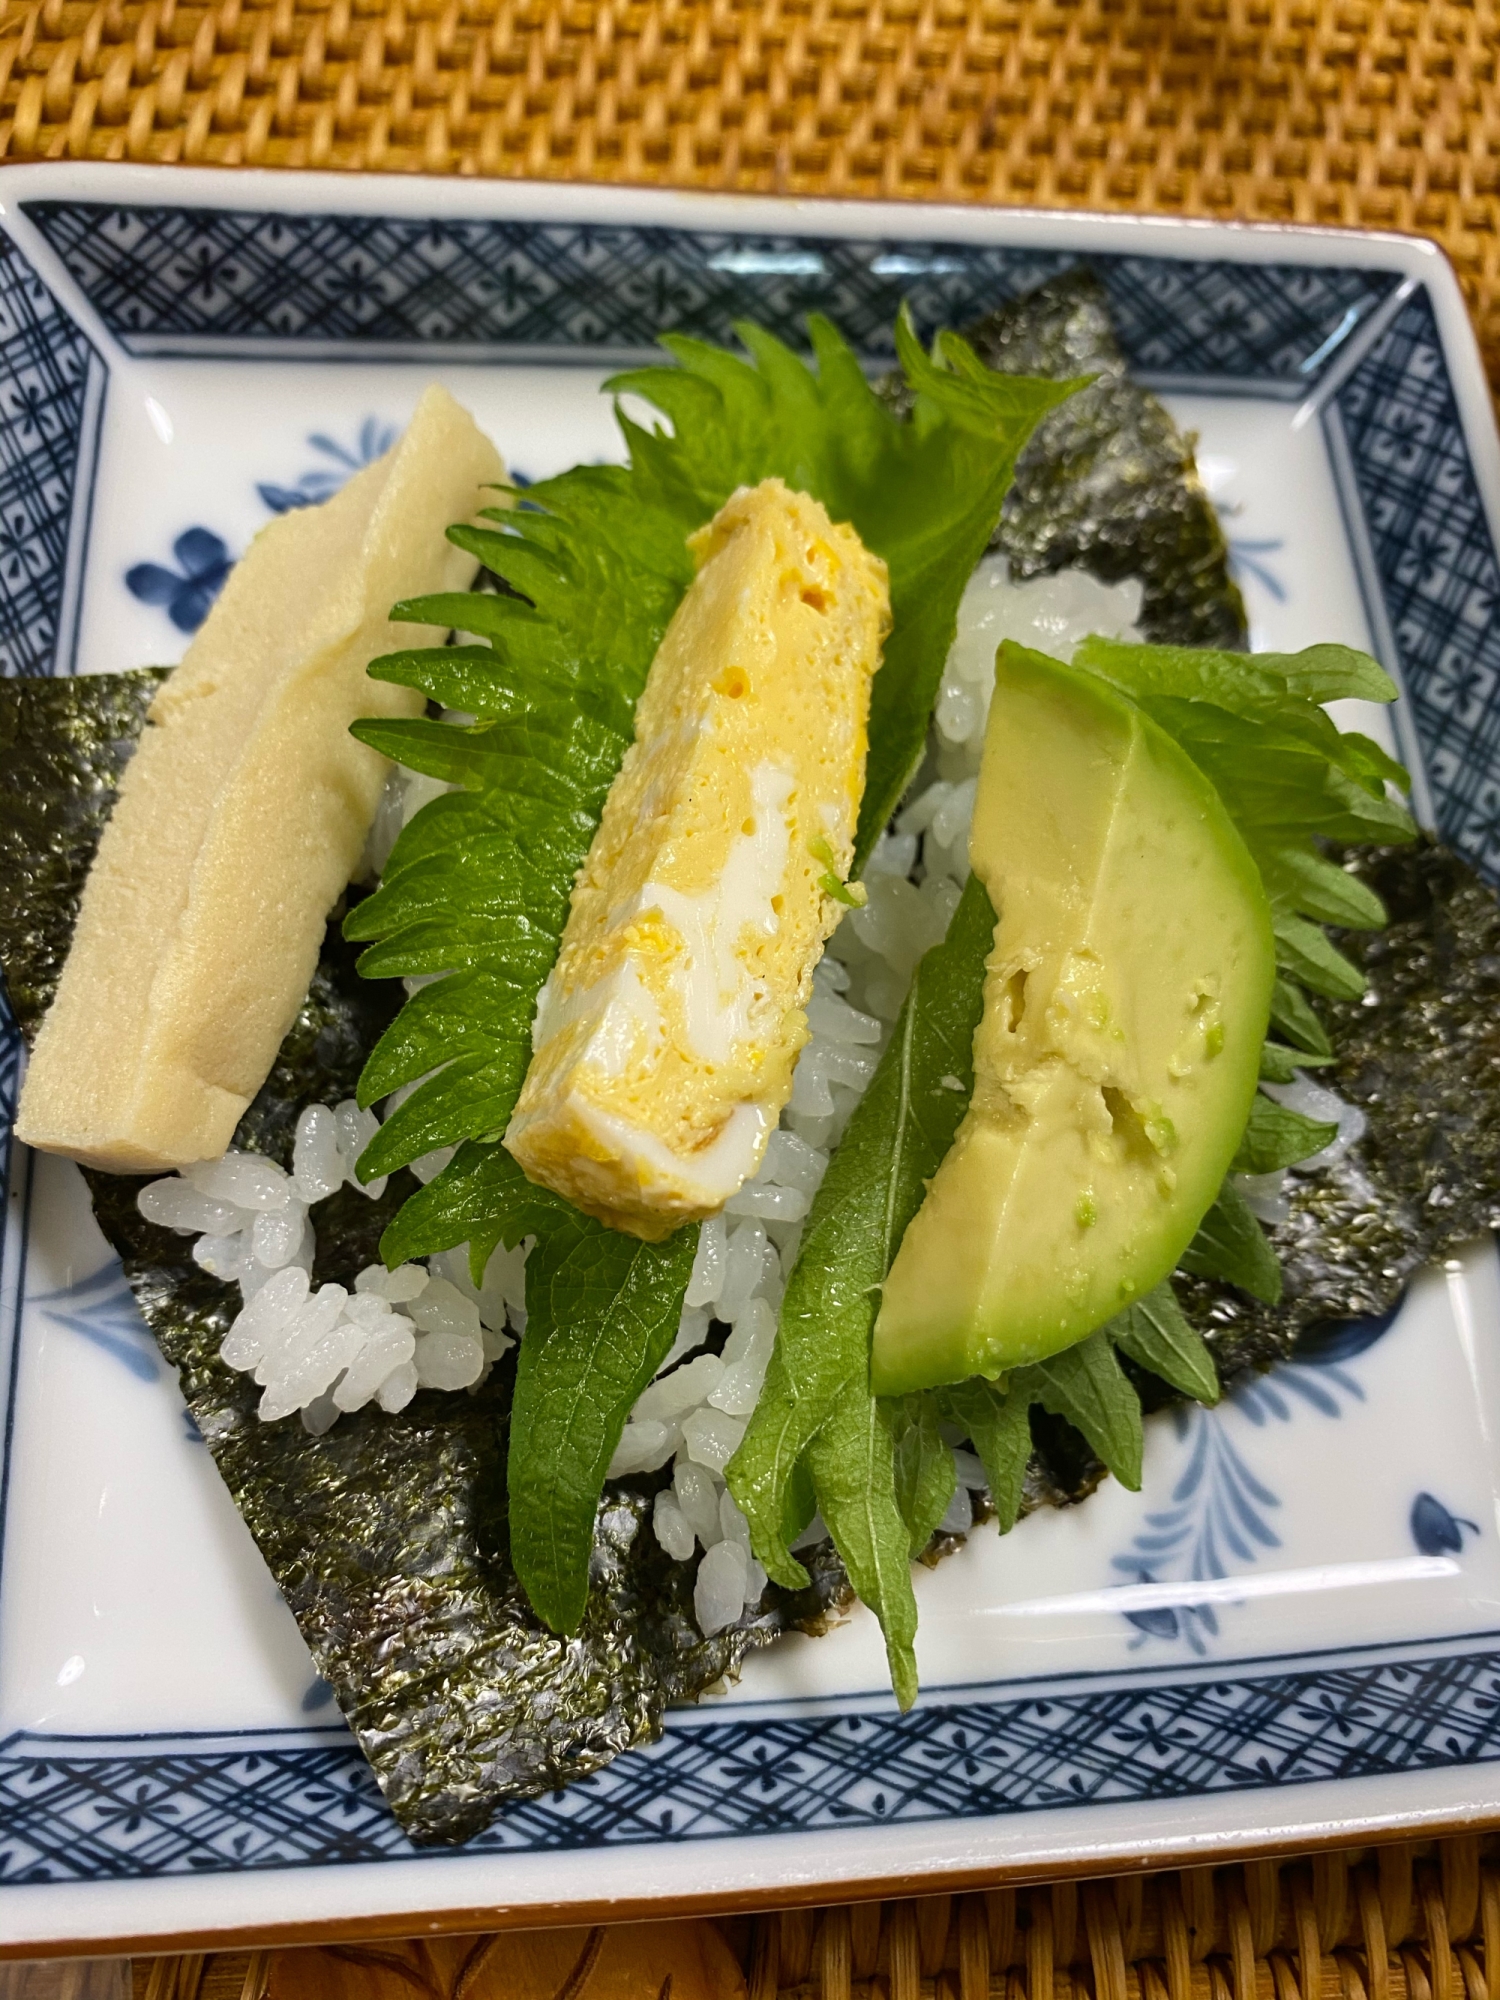 シンプル巻き寿司